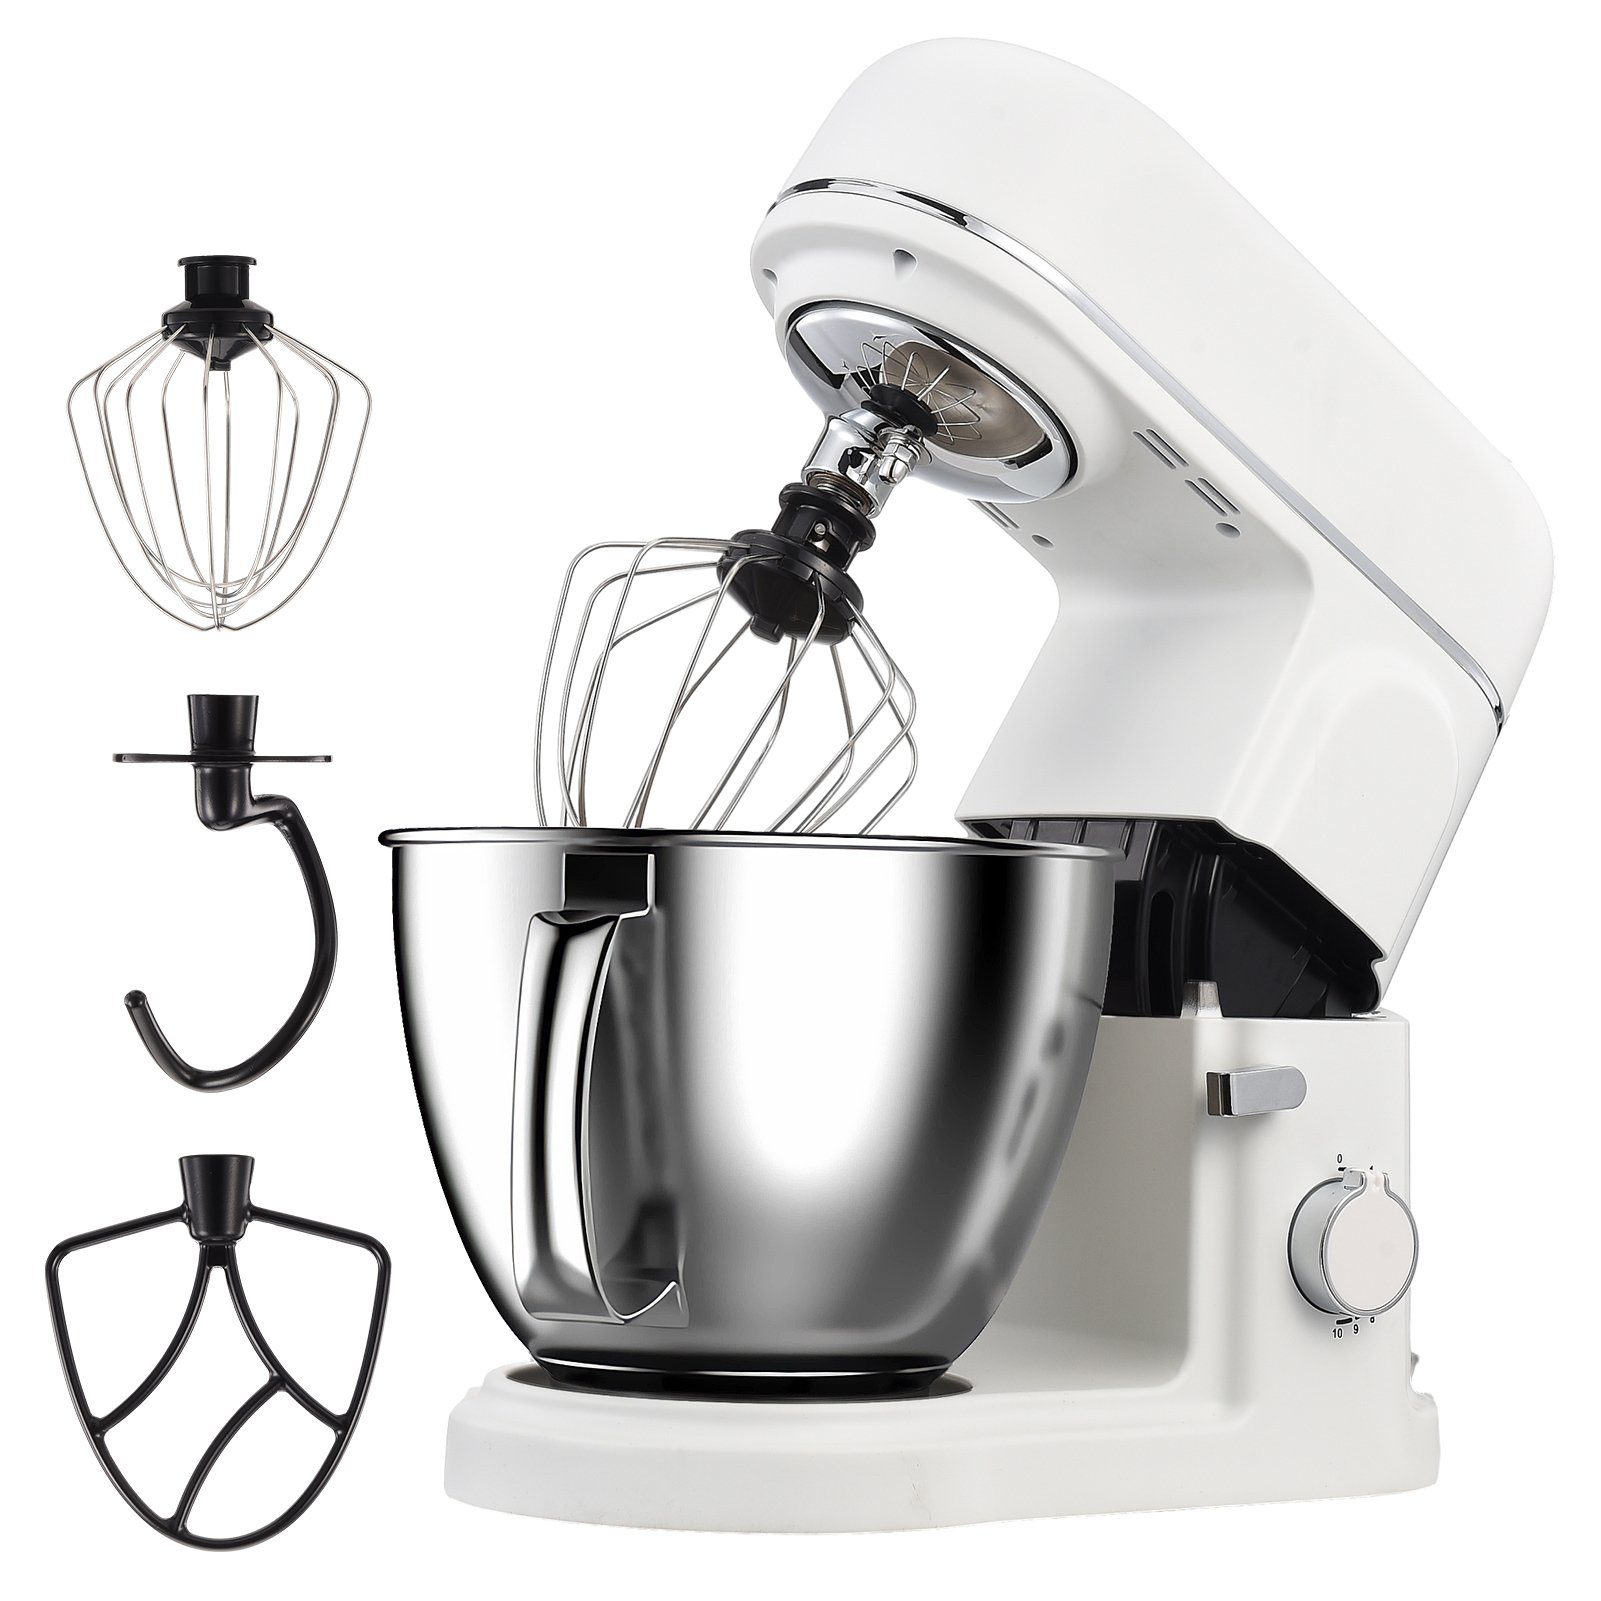 Mixer Kochfunktion Küchenmaschine weiß Multifunktional Kleine Maschine FUROKOY mit Haushaltsgeräte Küchenmaschine